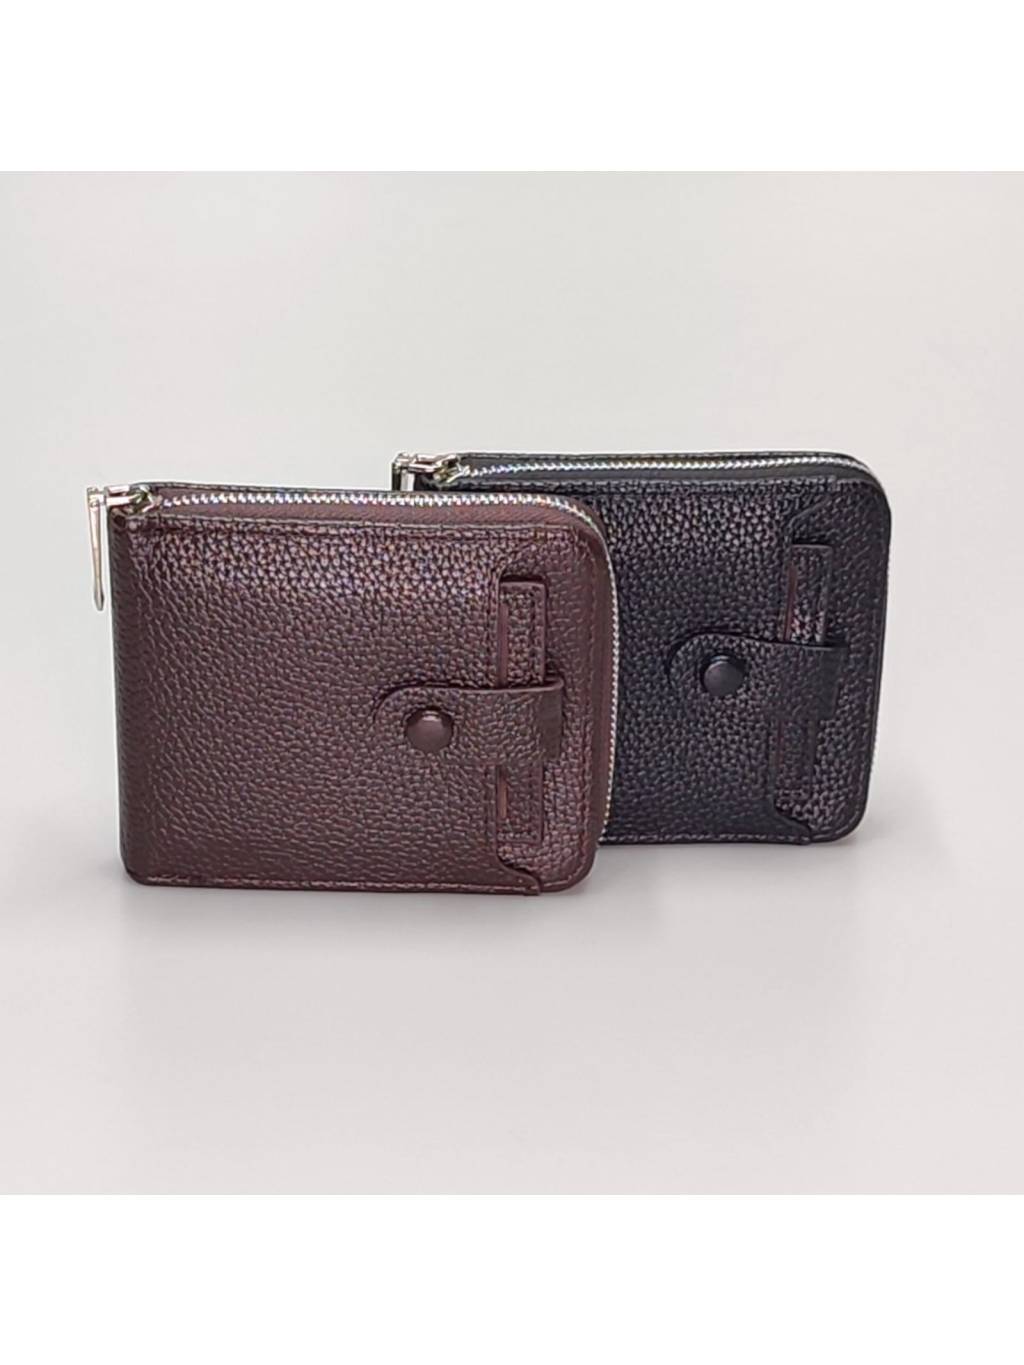 Pánska peňaženka B7572 www.kabelky vypredaj.eu (2)